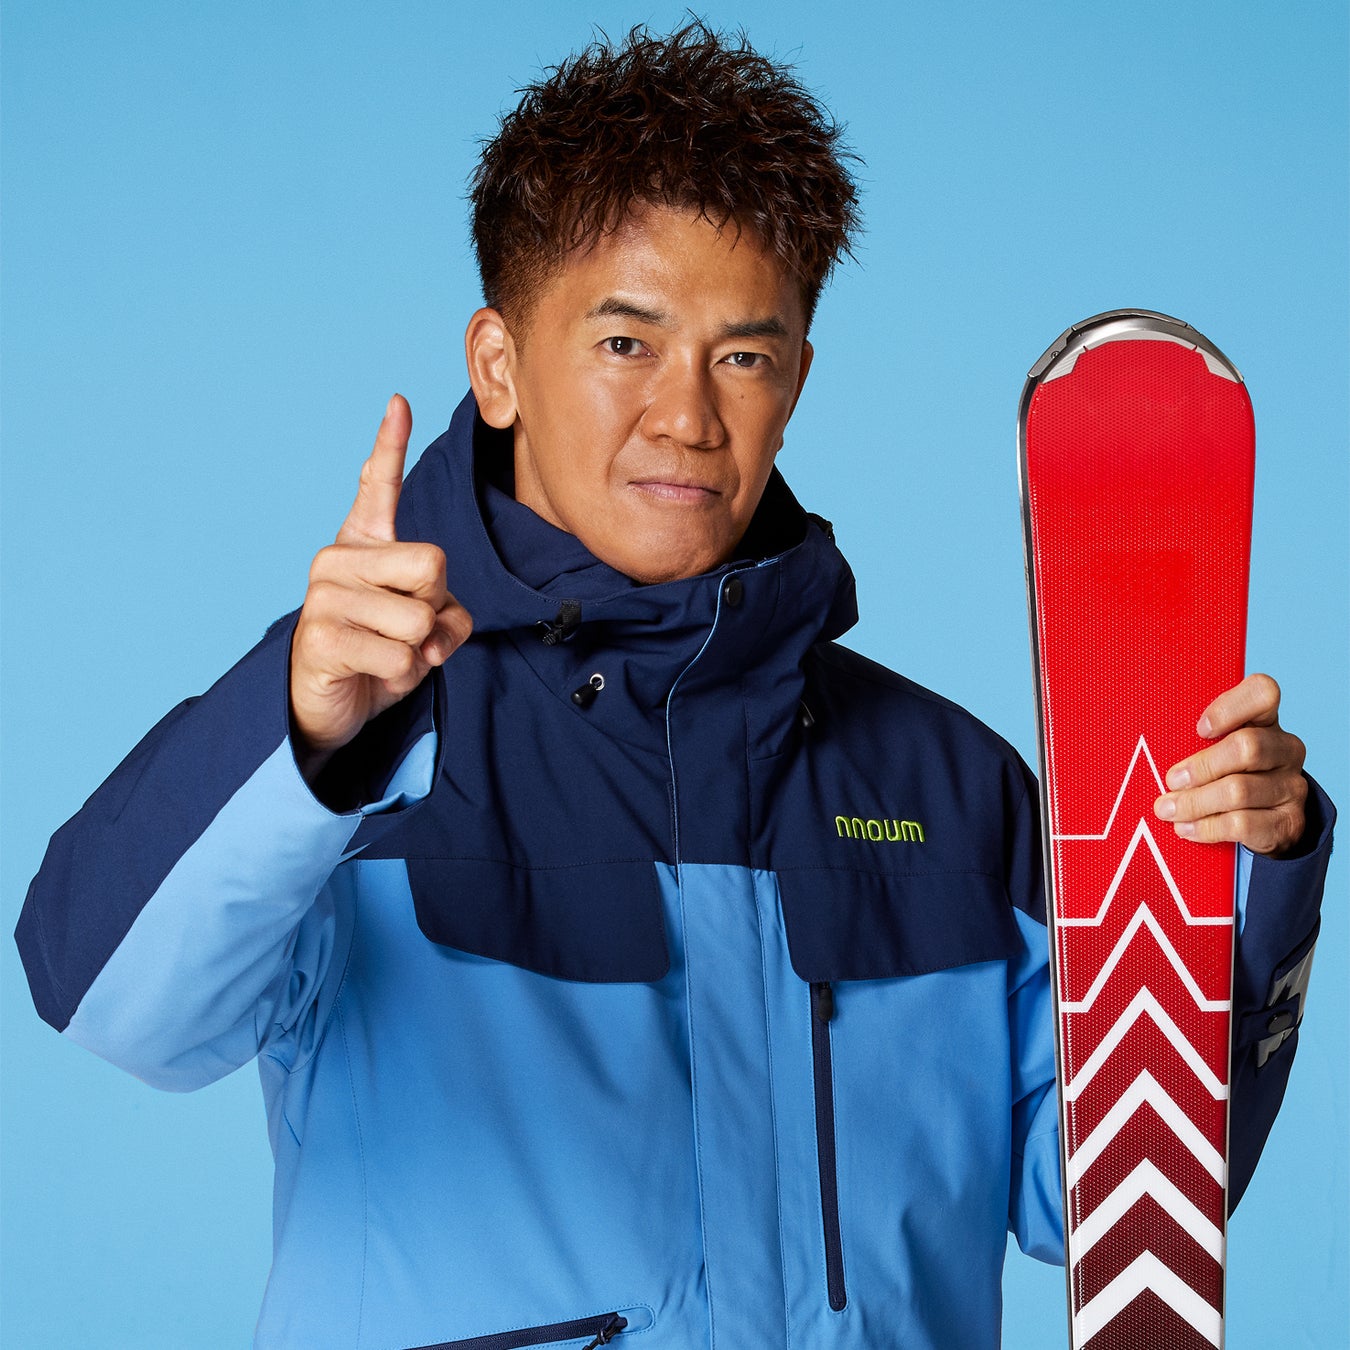 武井壮、2シーズン連続でスキー用品ネット通販日本トップクラス「タナベスポーツ」公式アンバサダー、並びに「nnoum」着用モデルに！10月28日(金)よりPR活動を開始のサブ画像1